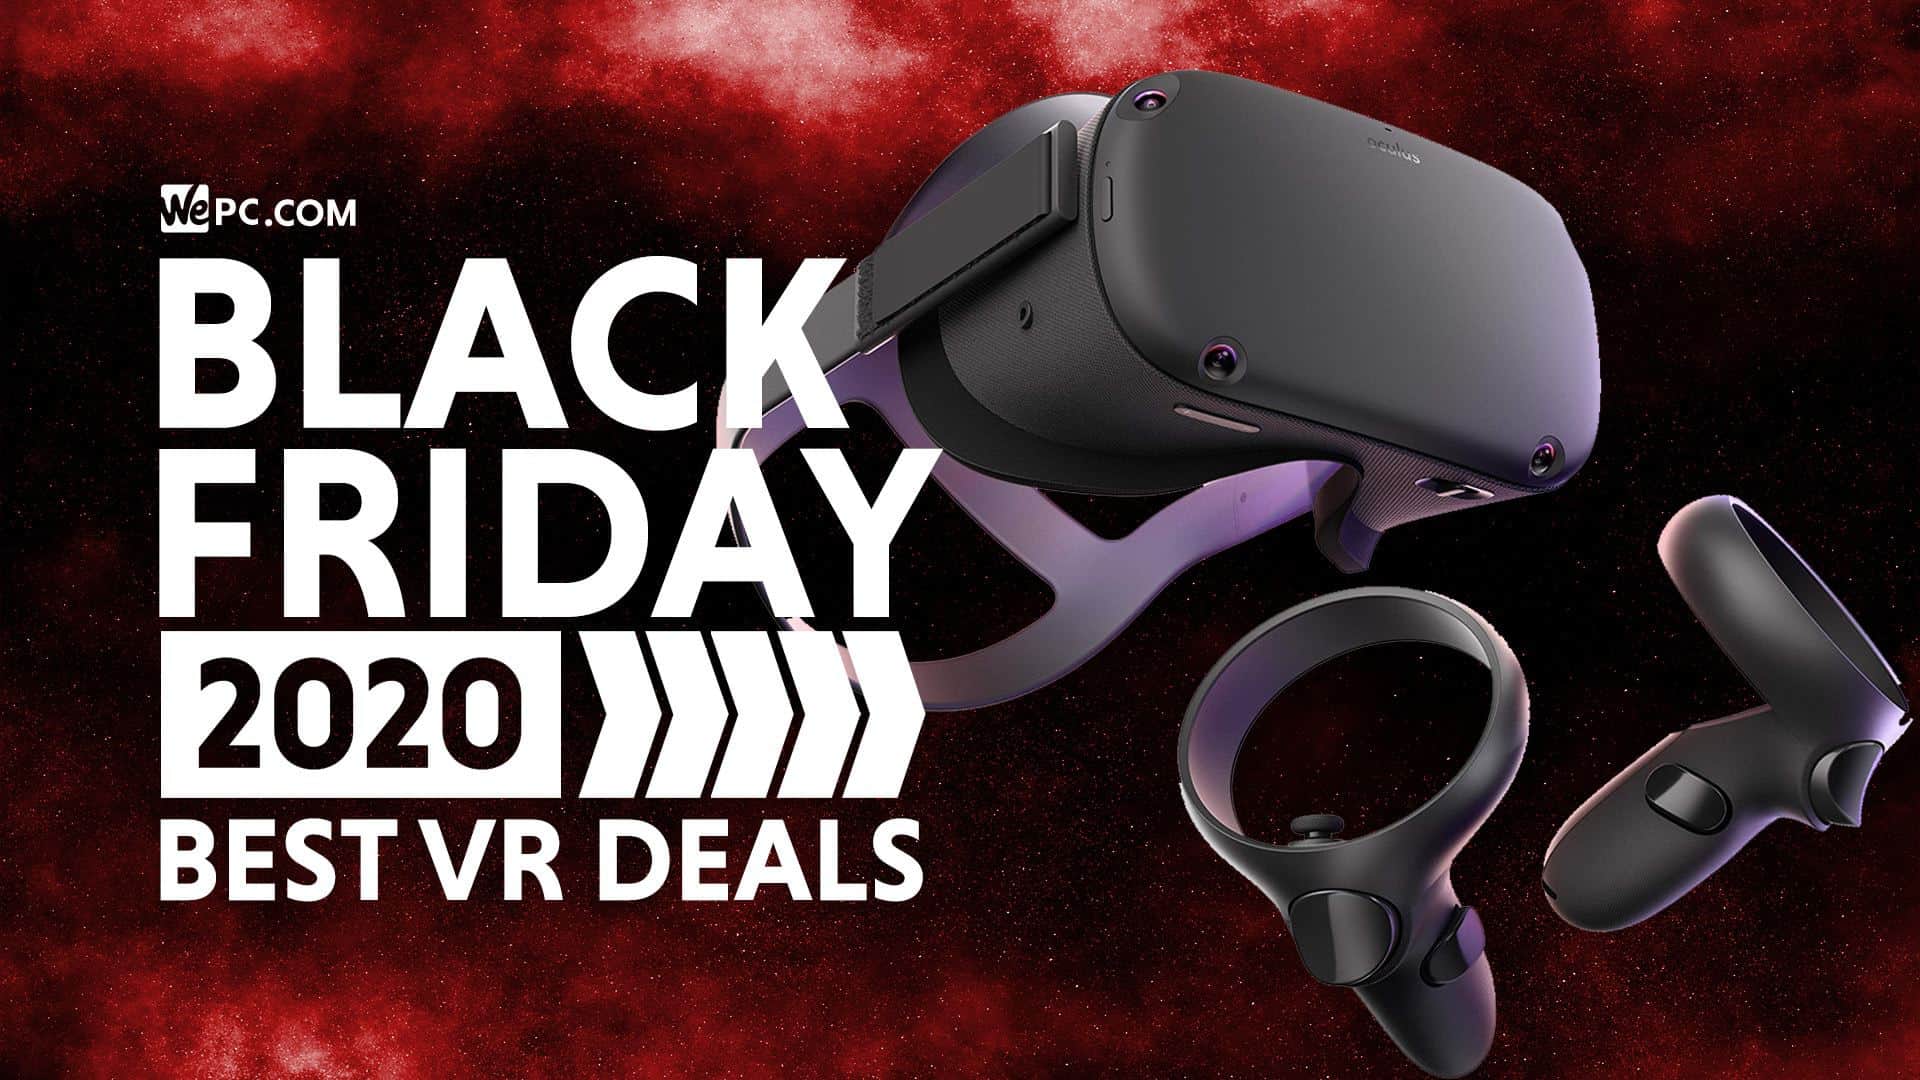 best buy oculus rift black friday